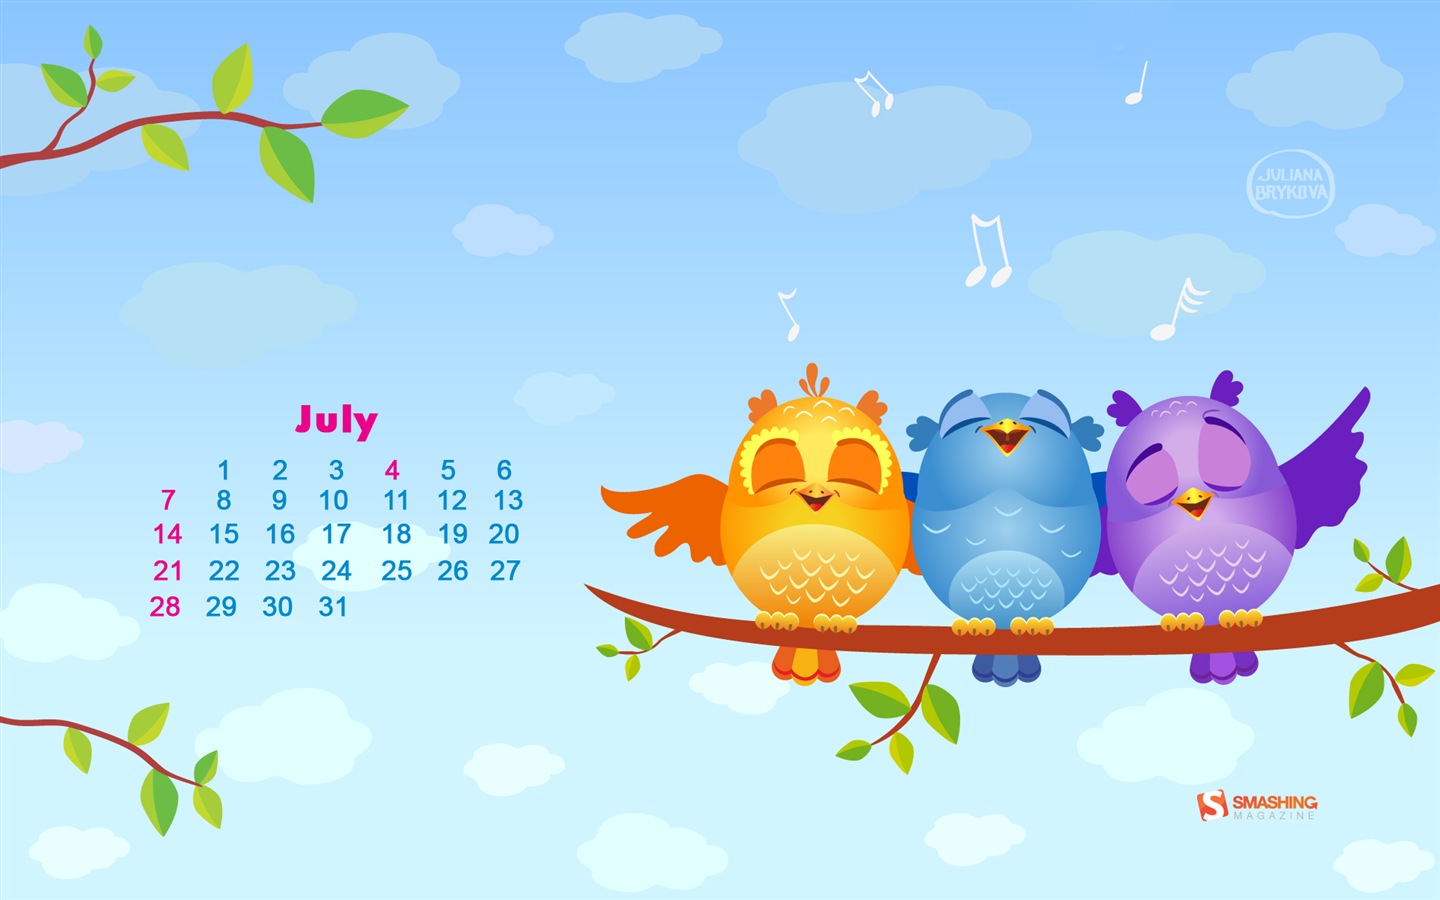 July 2013 calendar wallpaper (1) #14 - 1440x900